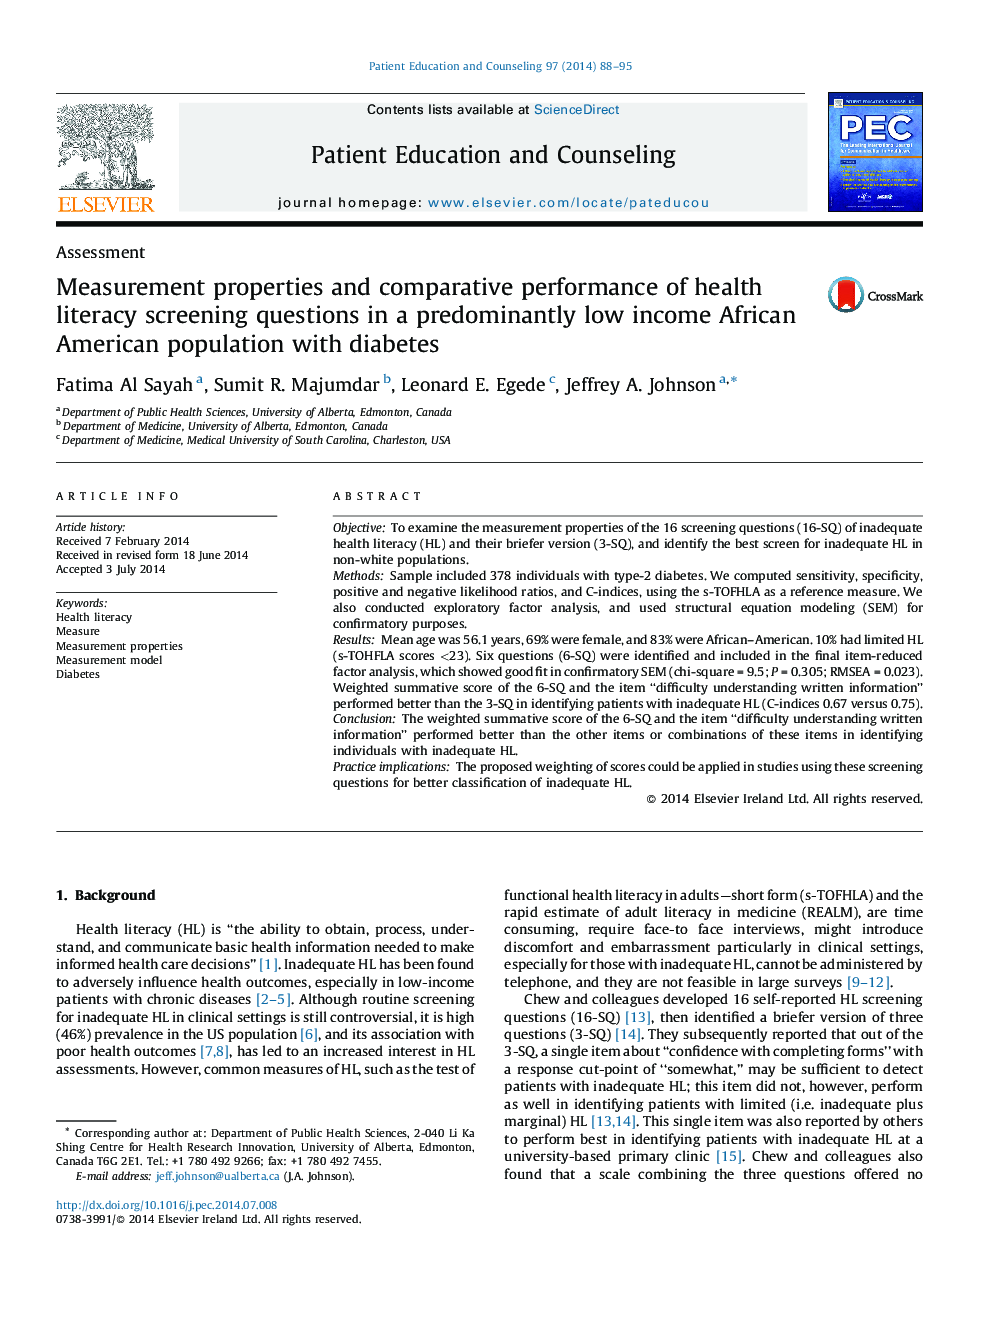 خواص اندازه گیری و مقایسهای سوالات غربالگری سواد بهداشتی در یک جامعه آماری آفریقایی آمریکایی با میزان پایین آمدن با دیابت 